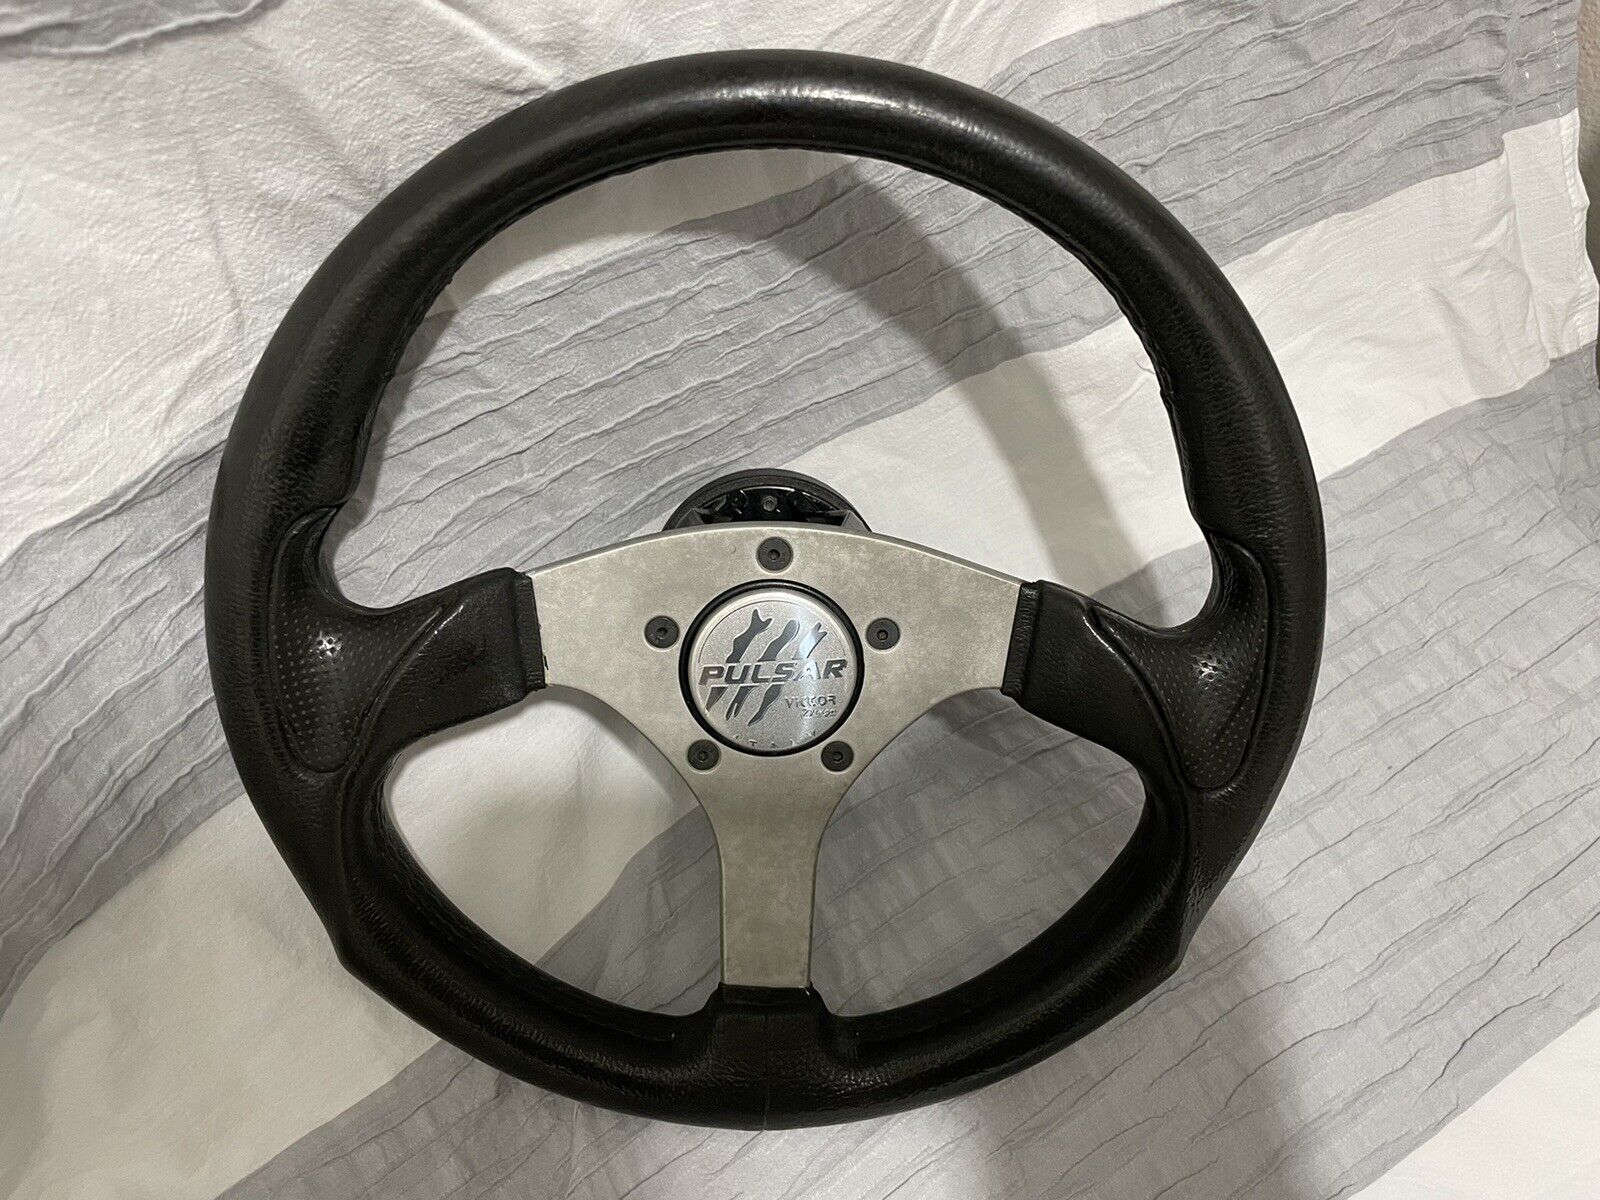 Victor Pulsar Sport Steering Wheel 320mm Black PU 3L33 KBA 70147 + Hub Adapter